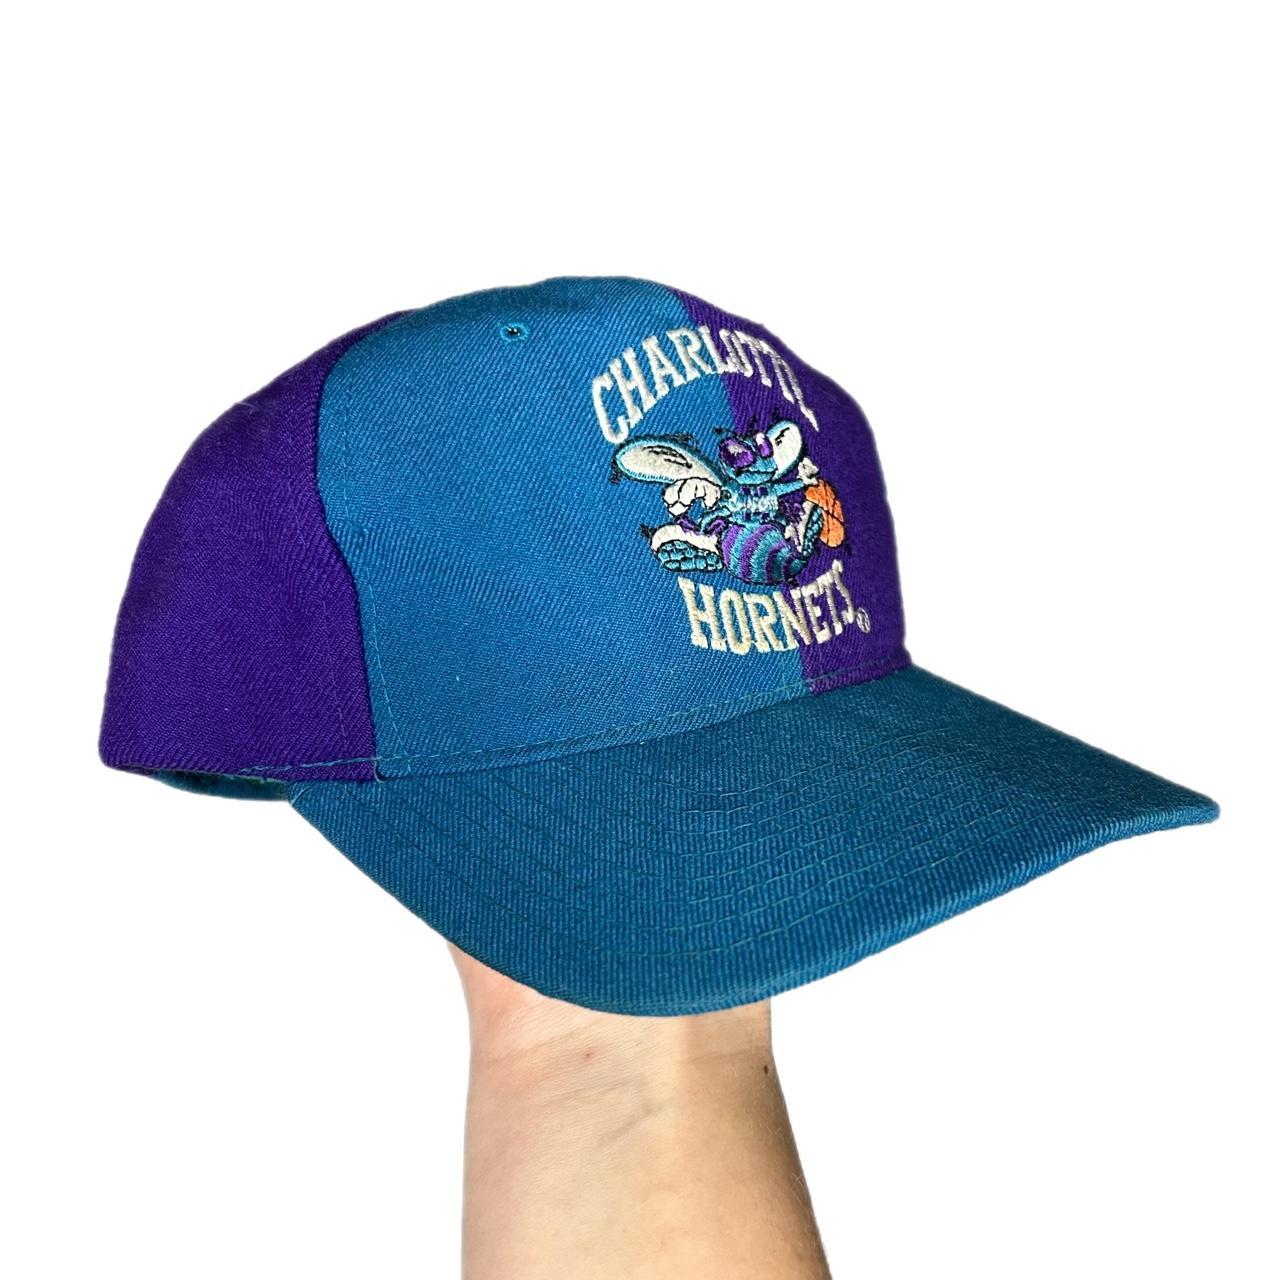 Vintage Charlotte Hornets The Natural Starter Snapback Hat Cap Blue Nba  100%Wool